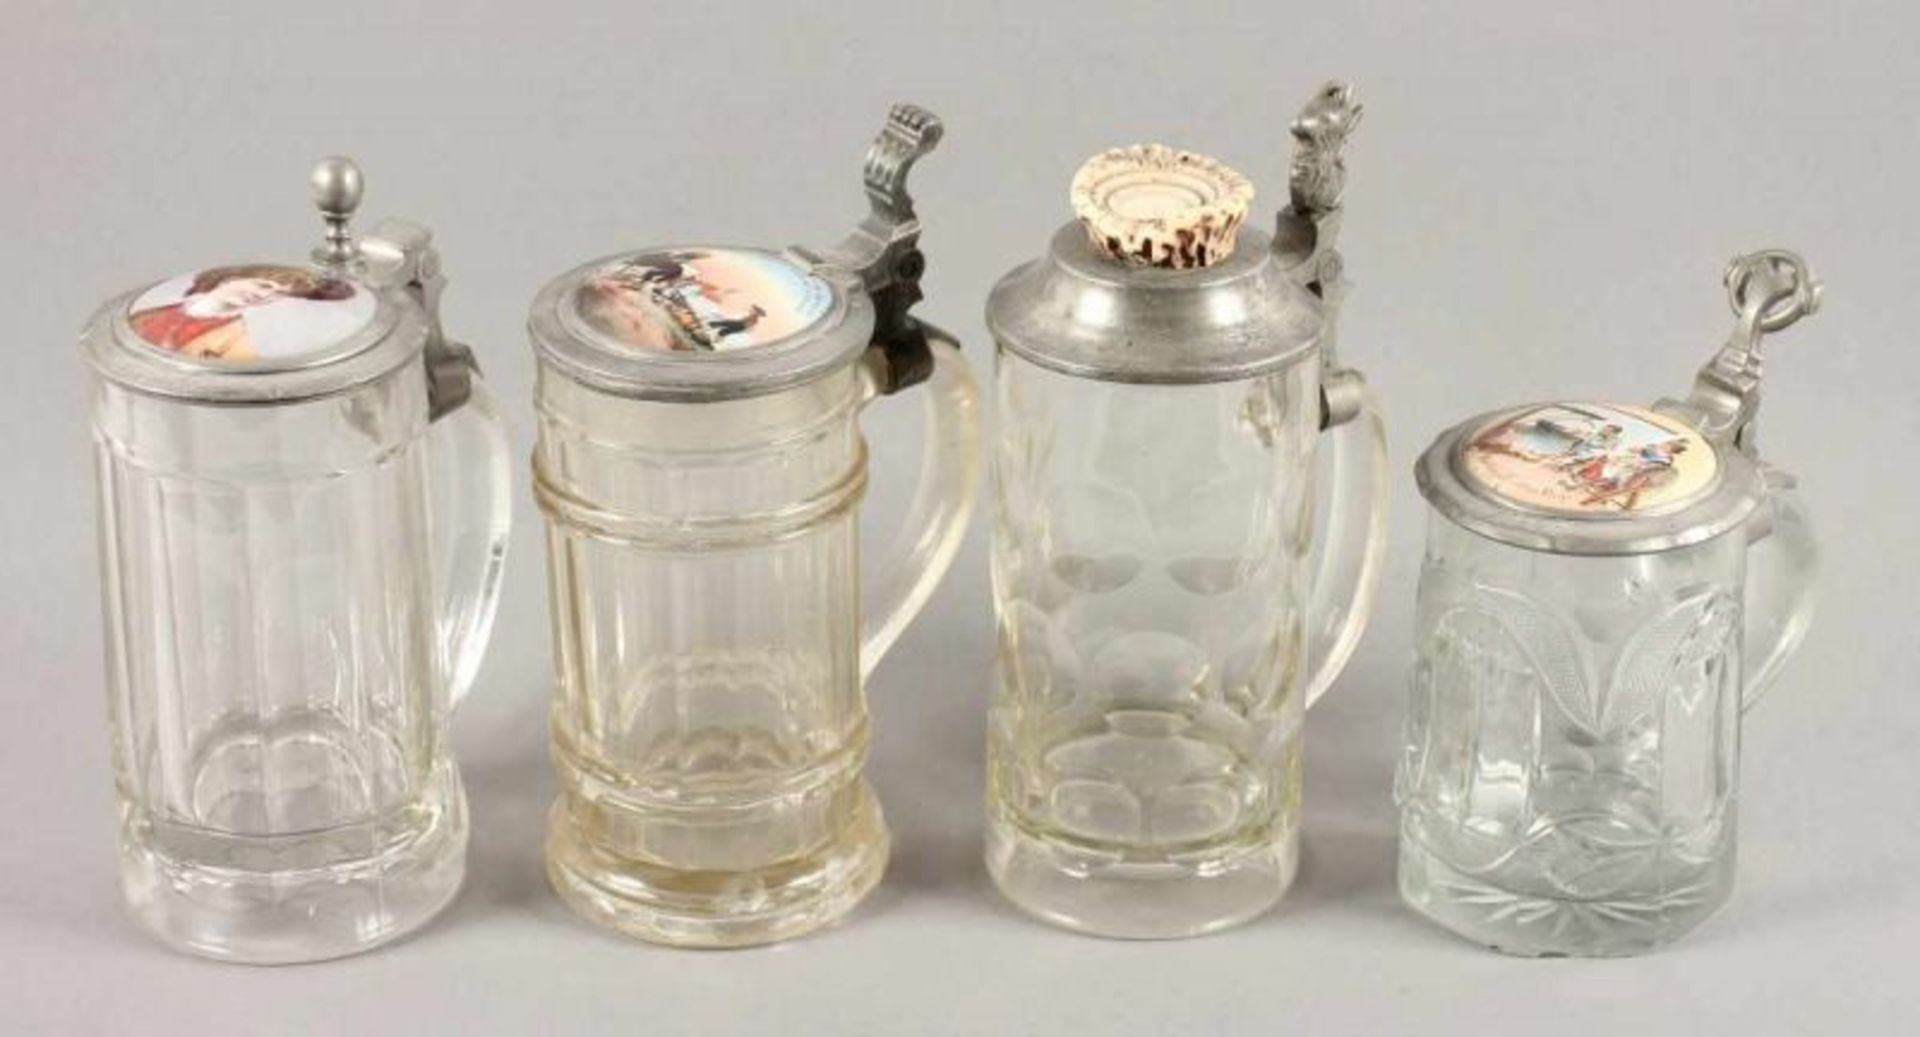 VIER GLASHUMPEN, farbloses Glas, Zinnmontur, drei Exemplare mit Porzellandeckel, polychrom